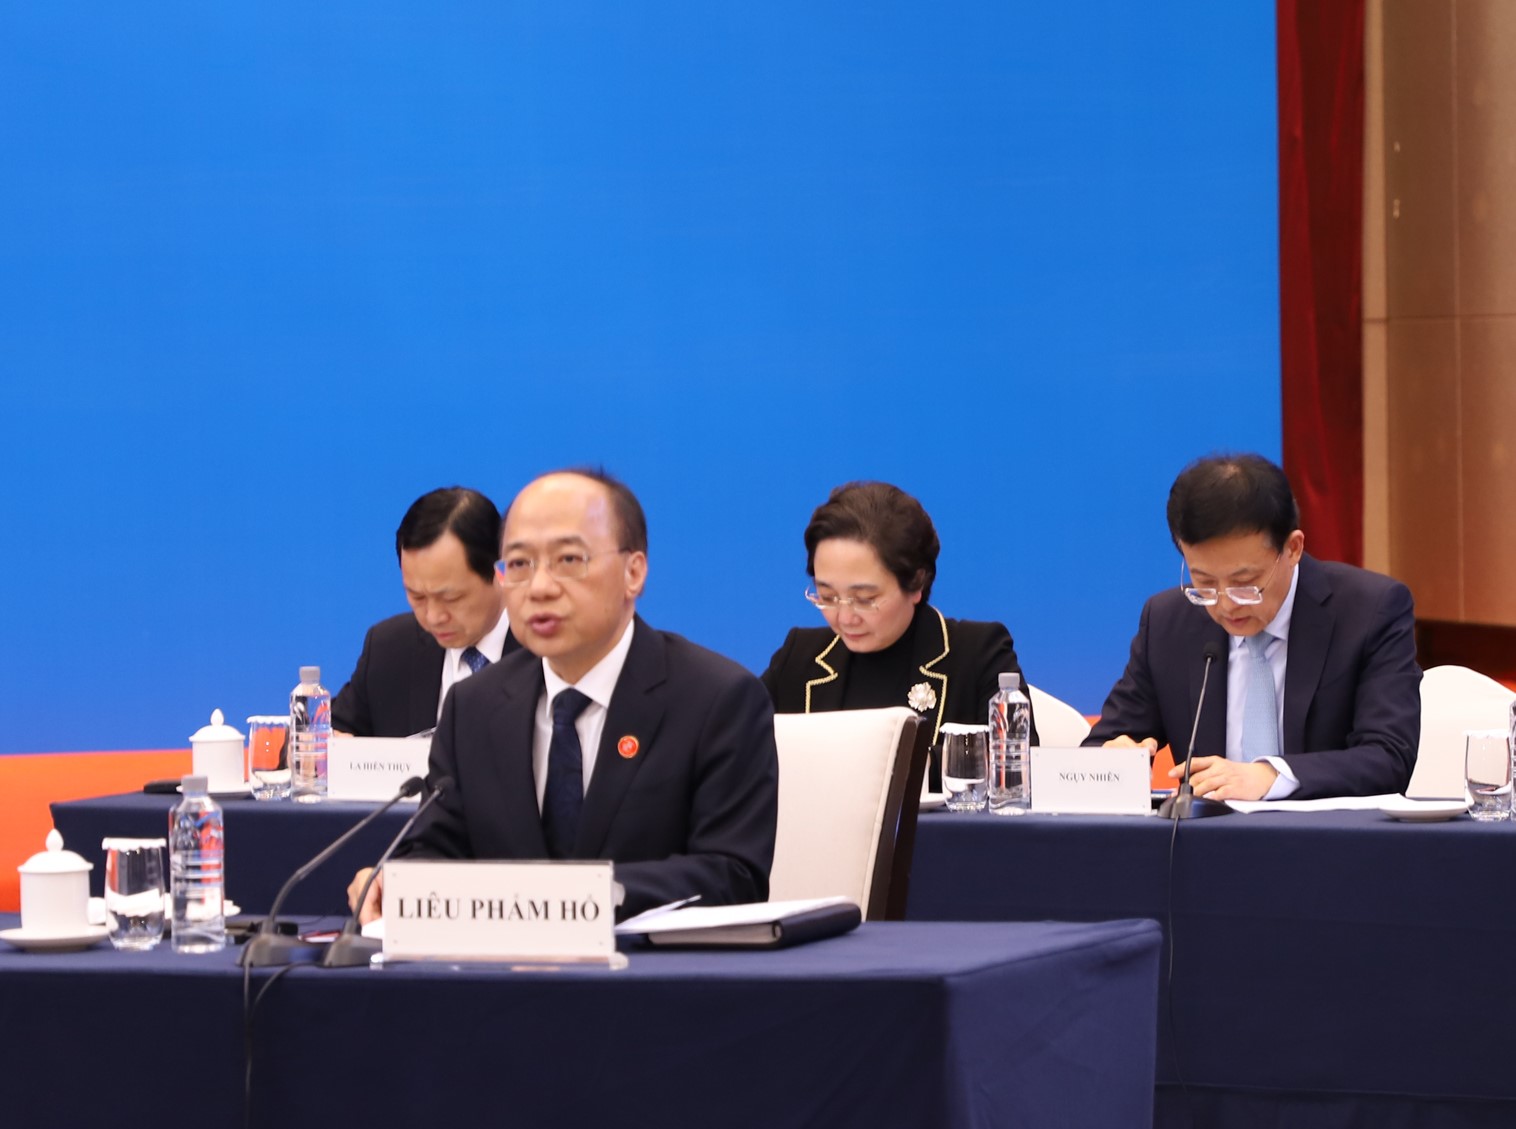 Phó Chủ tịch Chính quyền nhân dân Khu tự trị dân tộc Choang Quảng Tây, Trung Quốc, Chủ tịch Ủy ban Công tác liên hợp phía Quảng Tây Liêu Phẩm Hổ phát biểu tại hội nghị.